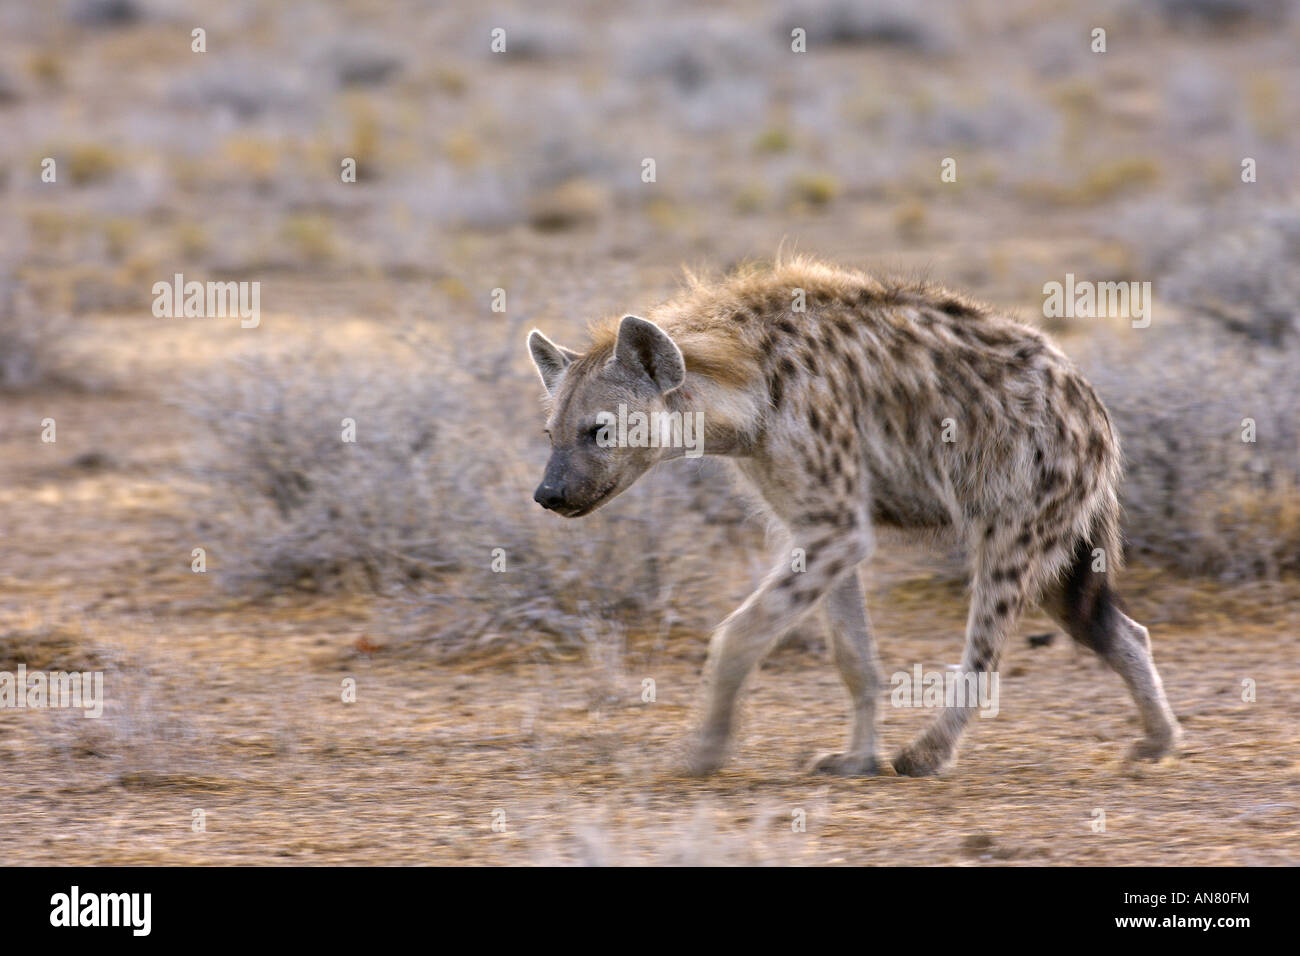 L'hyène tachetée Crocuta crocuta sur le vagabondage dans le parc national d'Etosha Namibie Novembre Banque D'Images